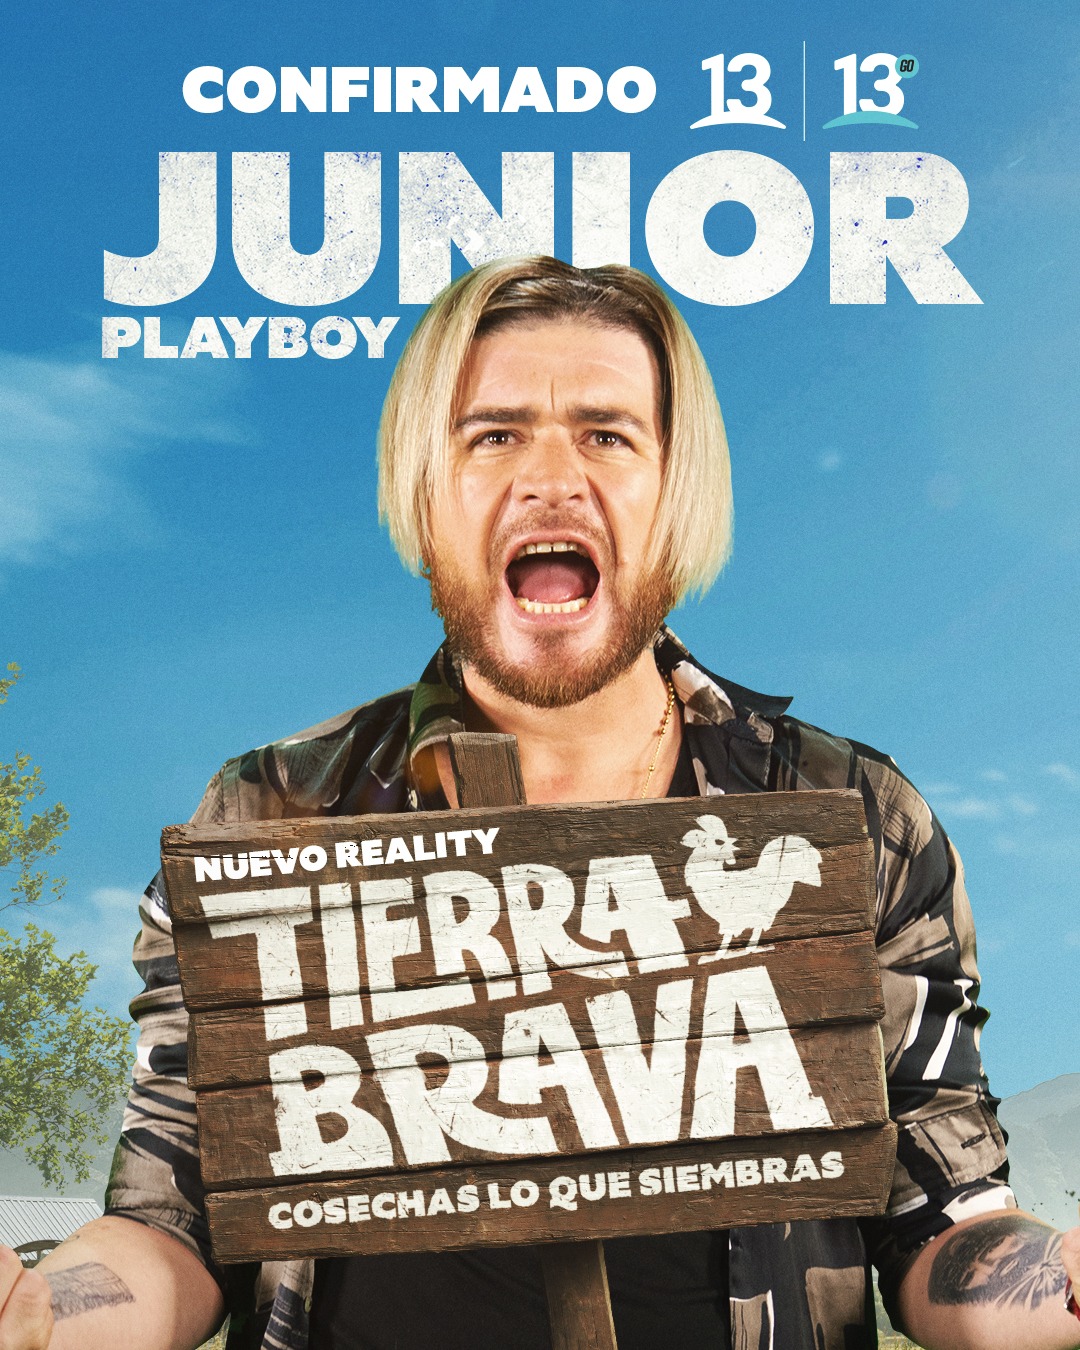 Afiche de Tierra Brava con Junior Playboy